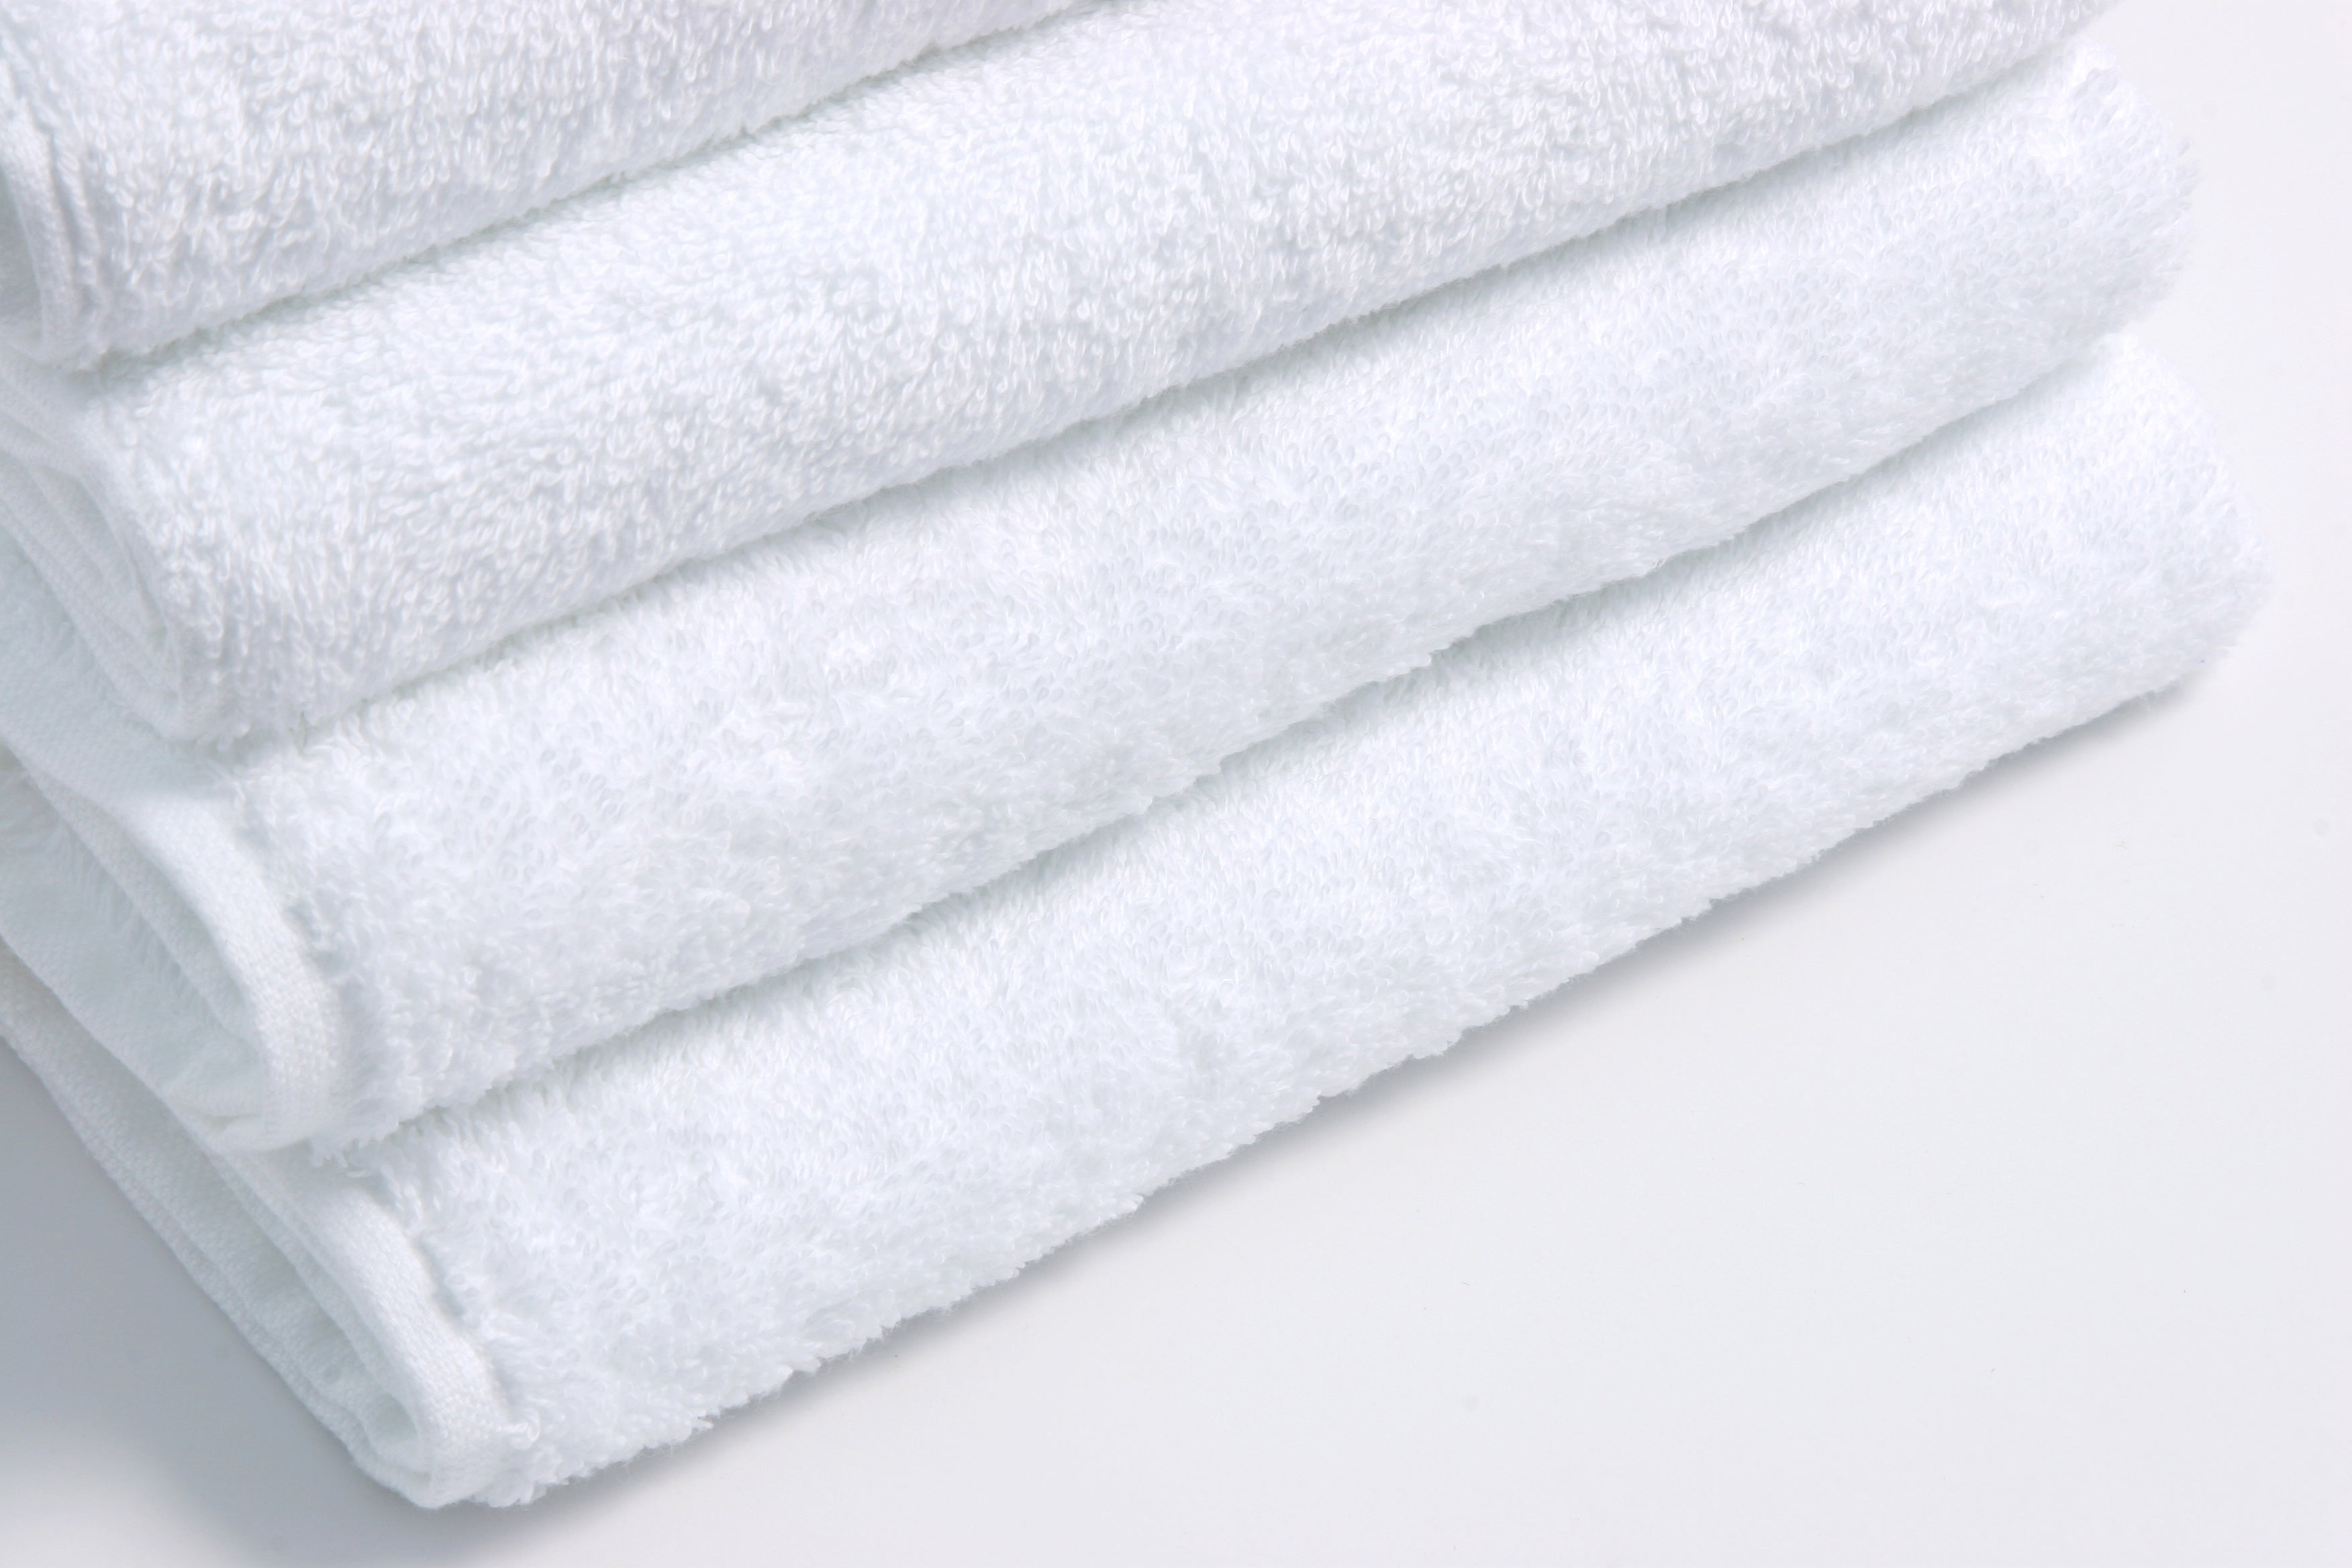 Coronet Luxury White 27x50 Cotton Bath Towel Dobby Border